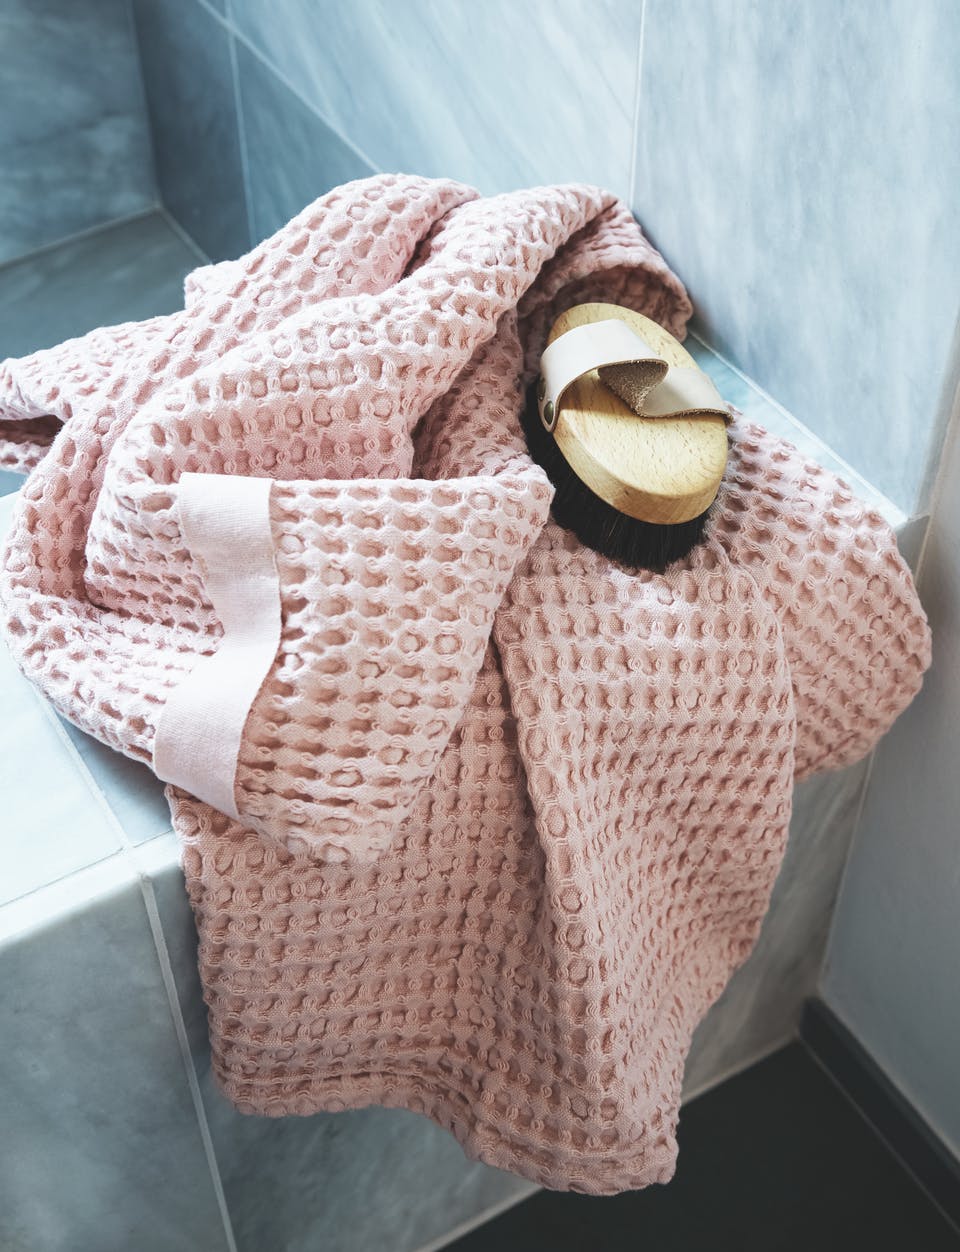 Chiếc khăn tắm dệt vải mềm mại với màu hồng cực kỳ điệu đà và nữ tính, bàn chải cũng được lựa chọn từ thương hiệu mà chủ nhân yêu thích.